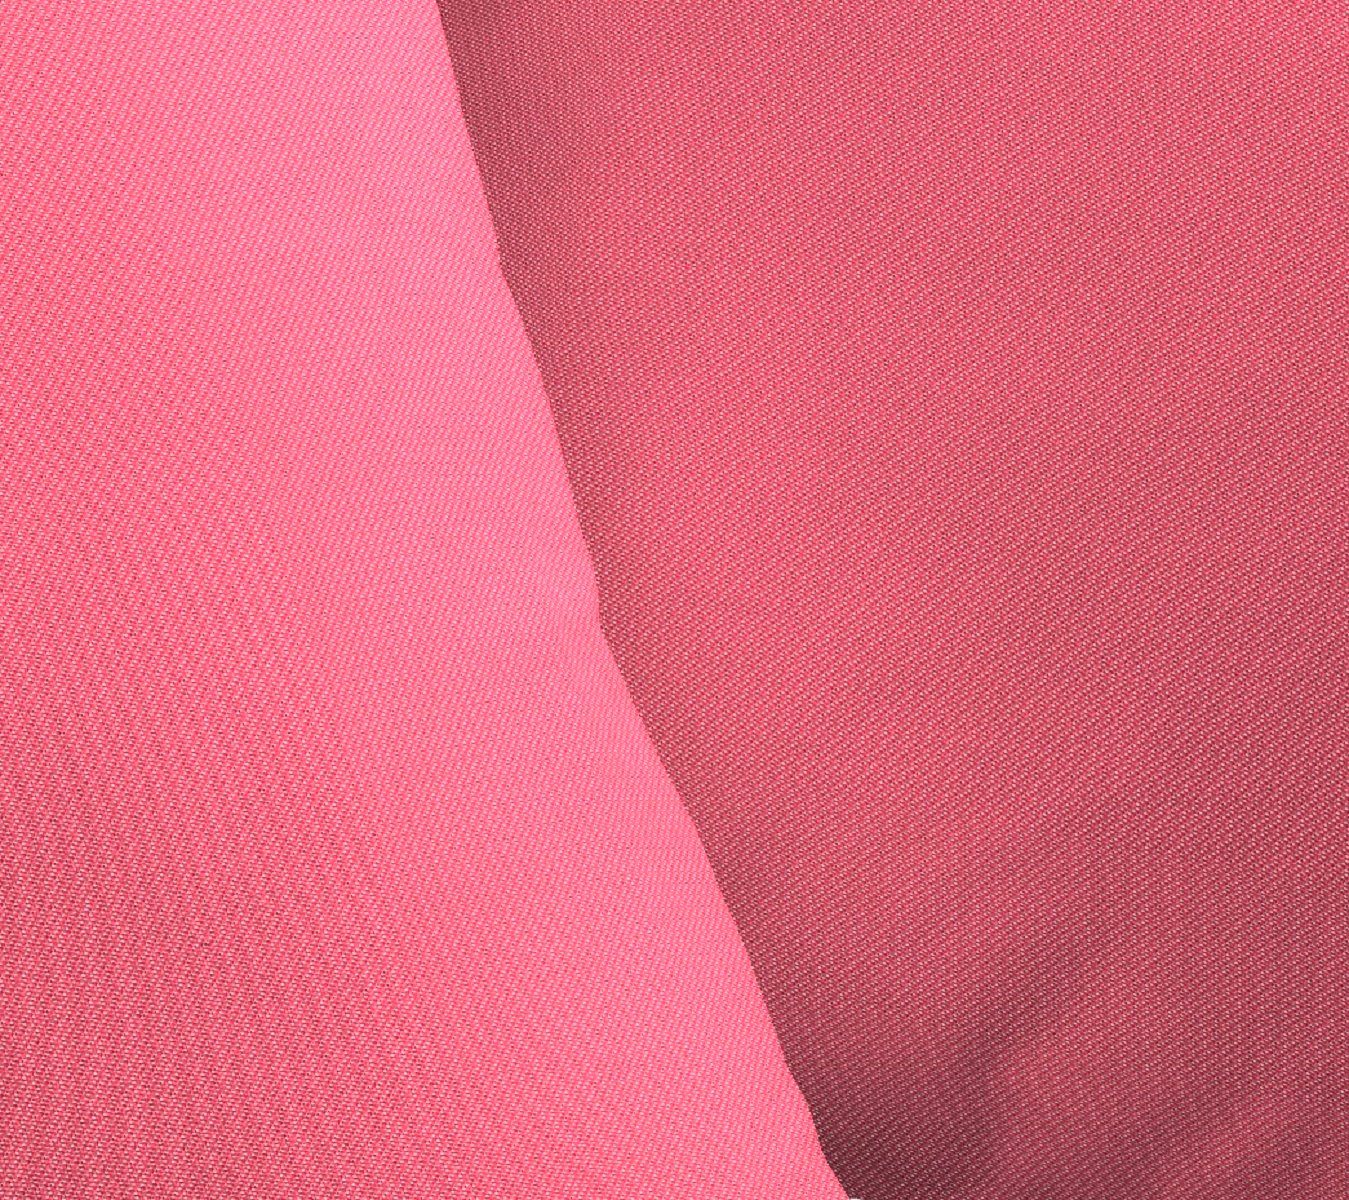 1 Füllung, Dekokissen Adam Kissenhülle ohne aus Bio-Baumwolle, Stück pink Uni zertifizierter Collection,